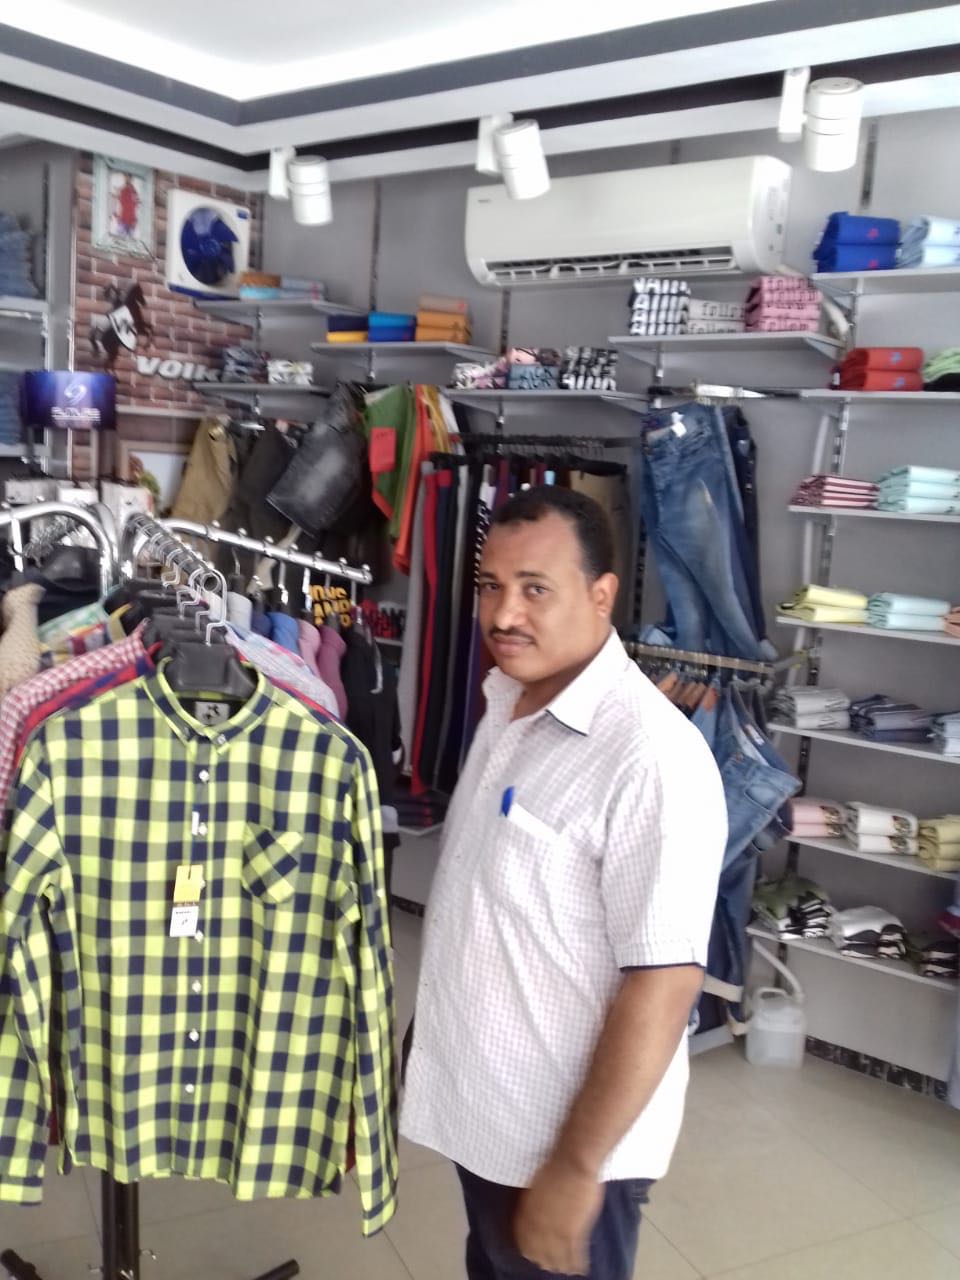 تموين الاقصر تواصل حملاتها بالمحلات لمتابعة الاوكازيون